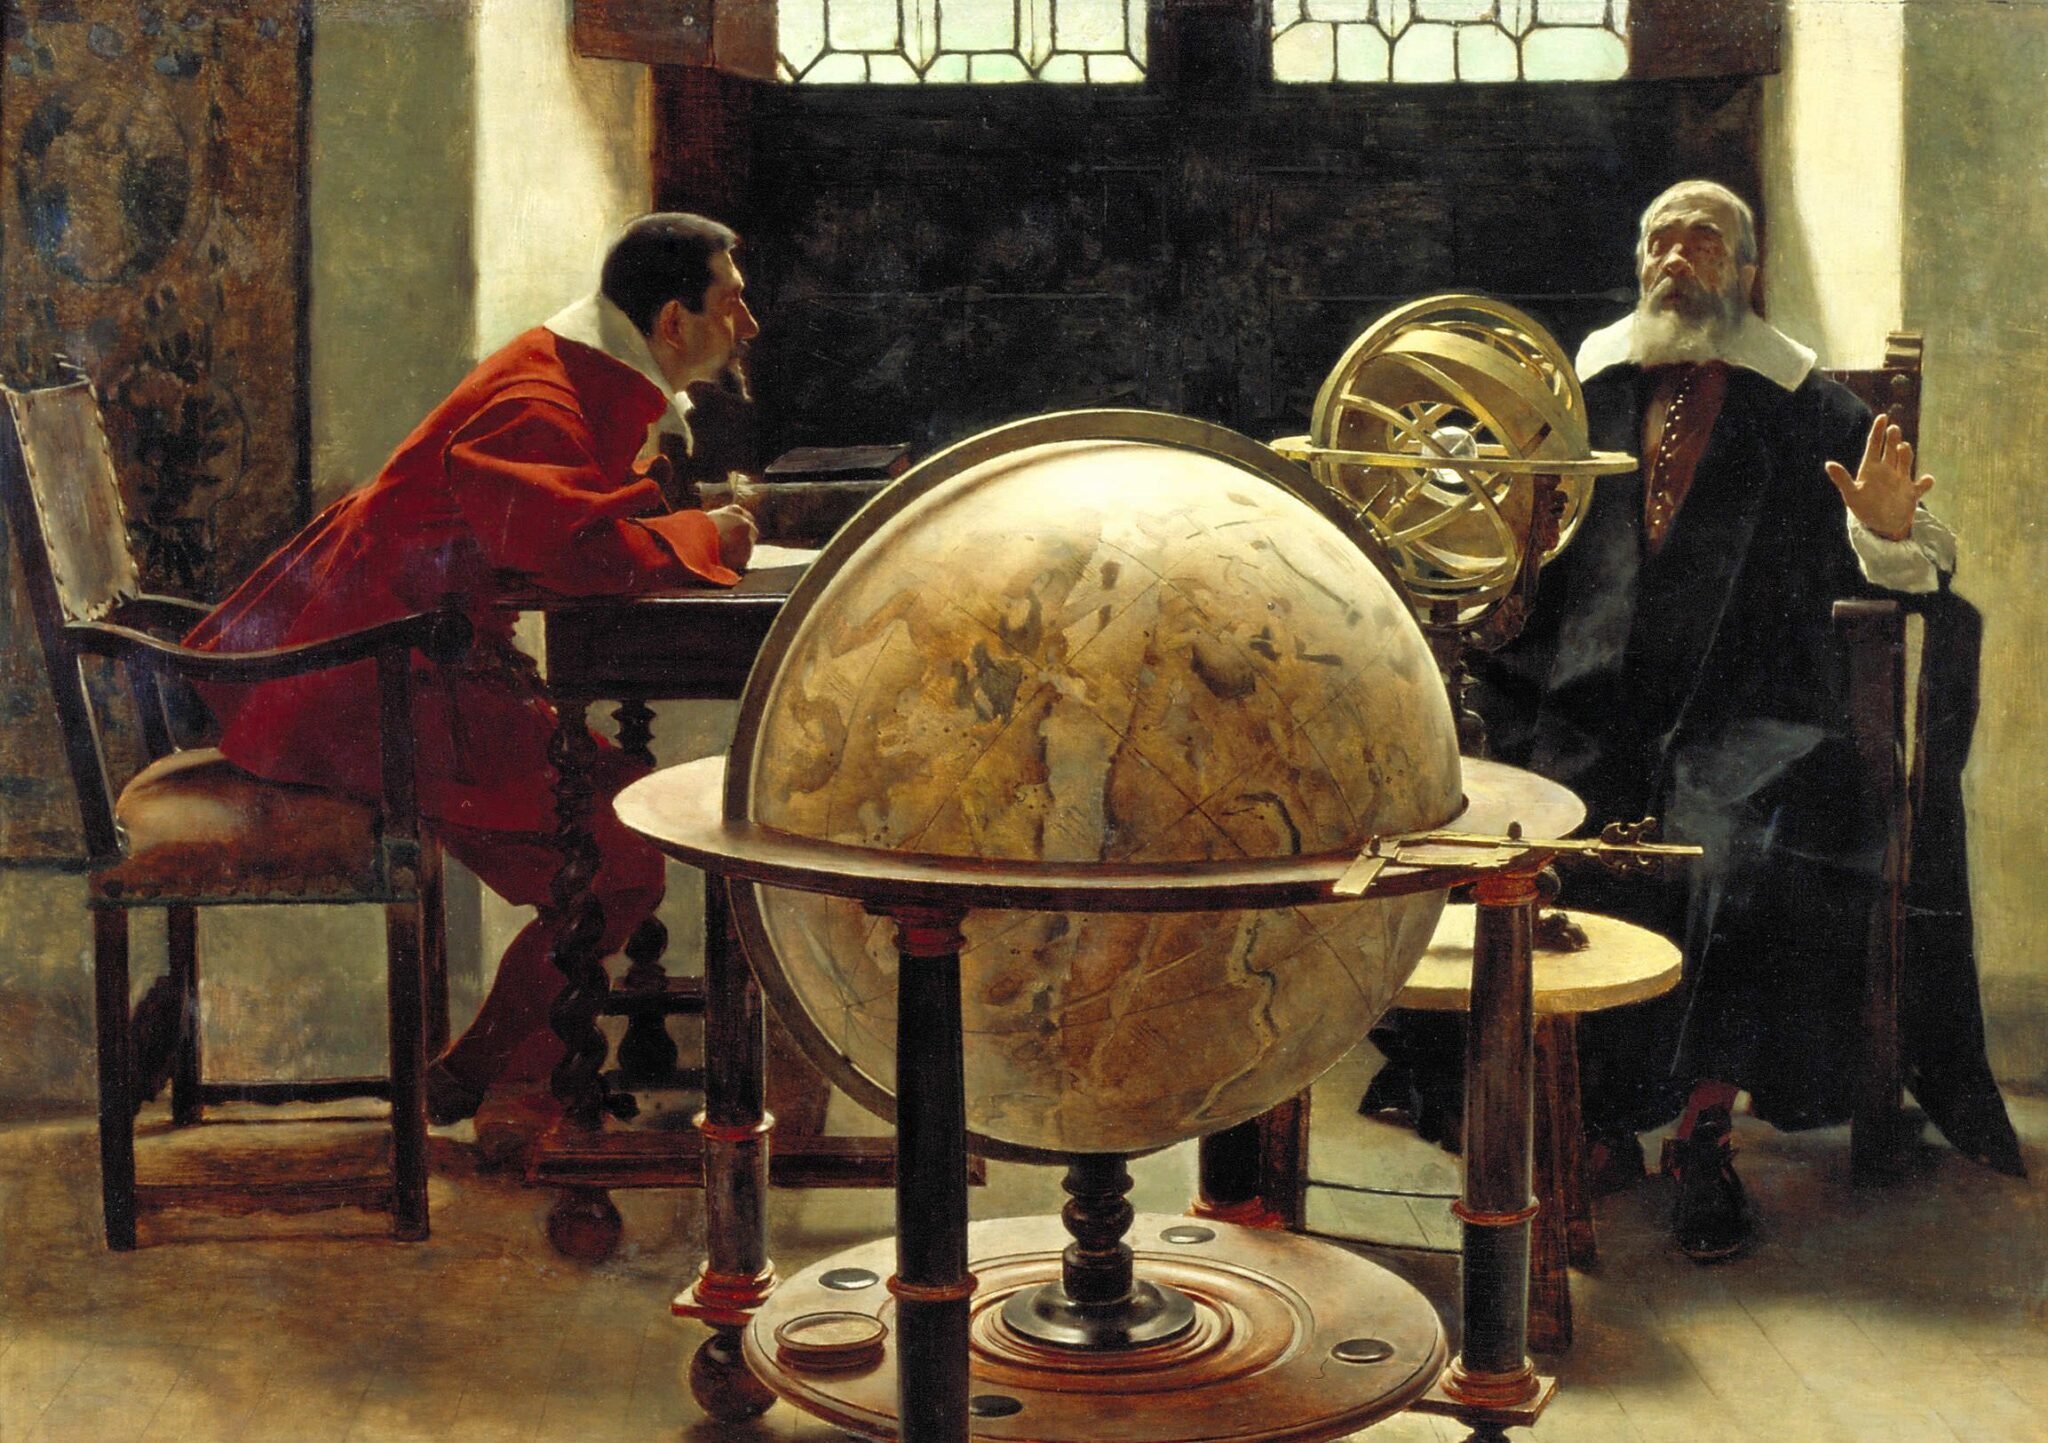 История наука века почему. Галилео Галилей наука. Галилей эпоха Возрождения. Галилео Галилей обучает Вивиани. Галилео Галилей астрономия.